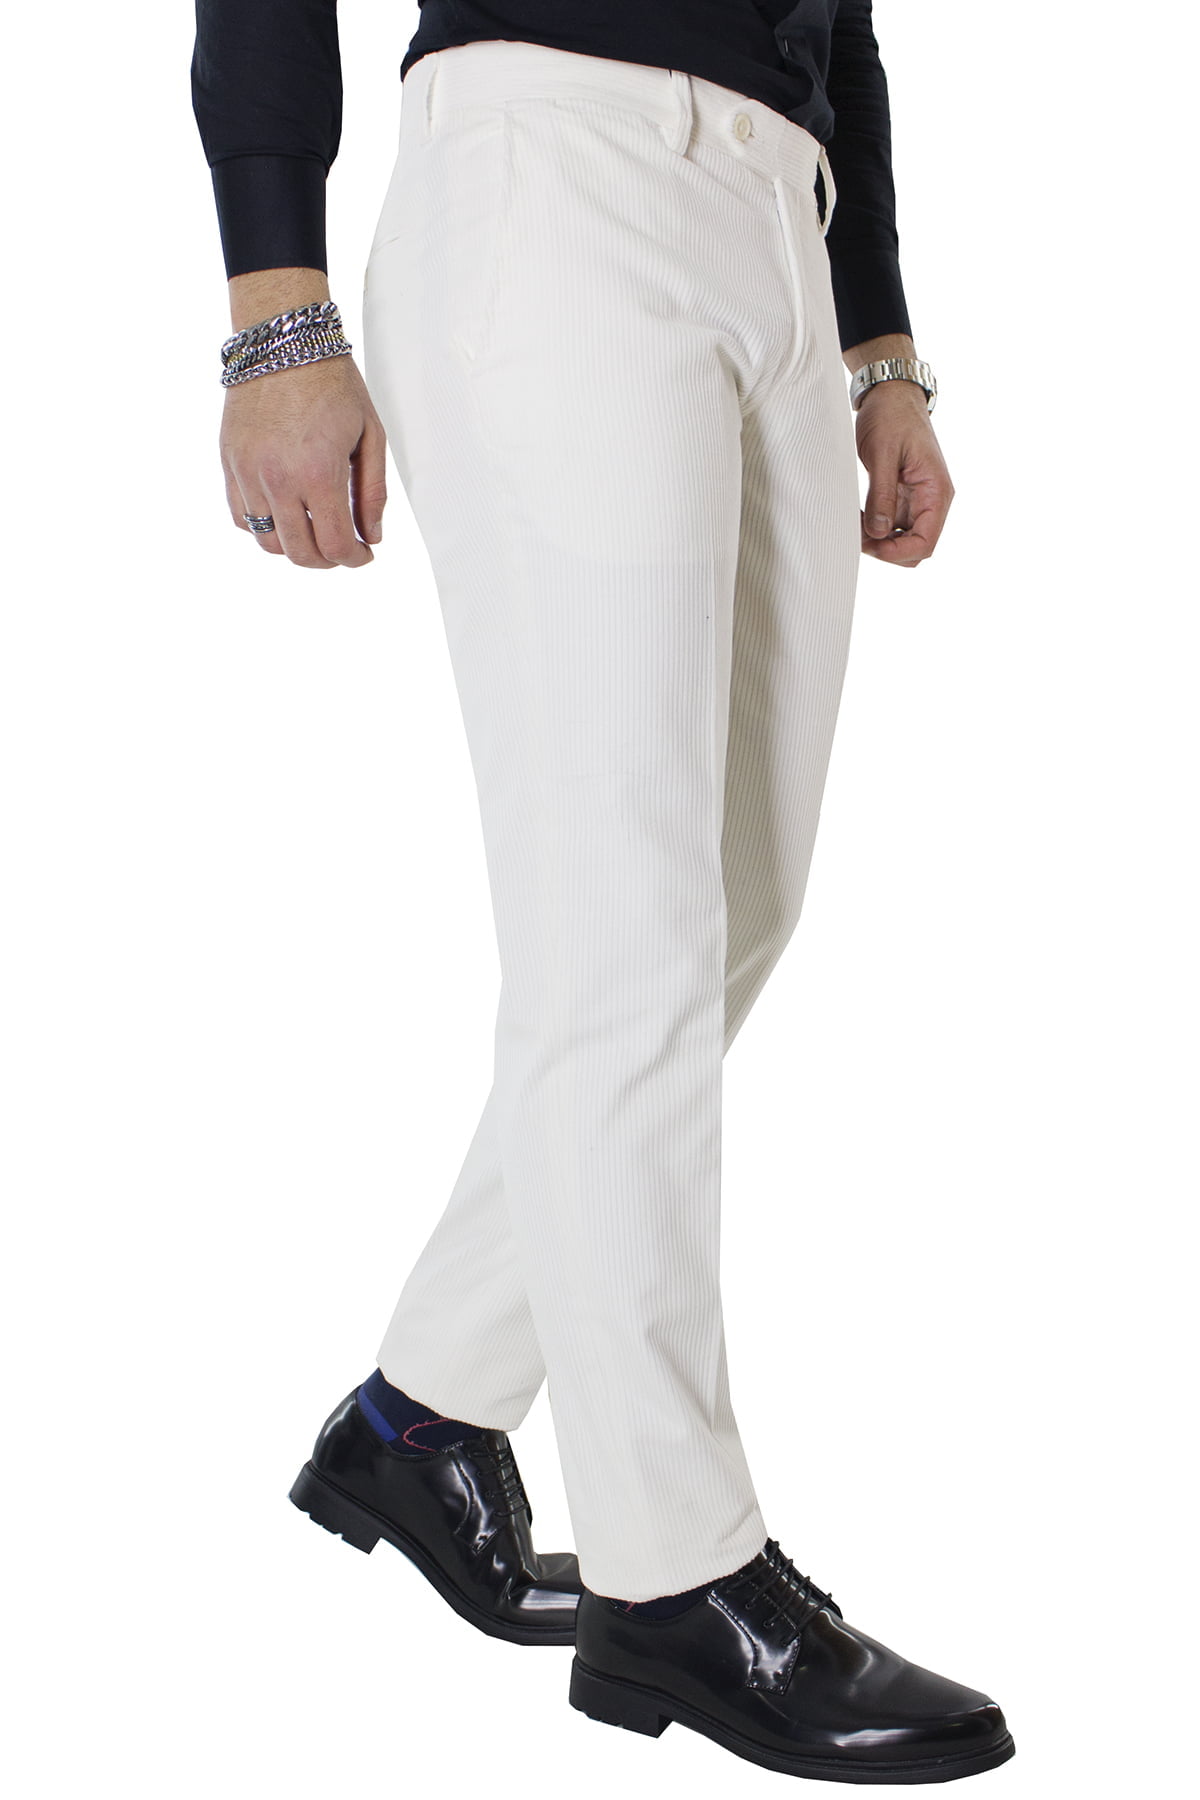 Pantalone uomo bianco in velluto a coste strette con tasche america orlo naturale